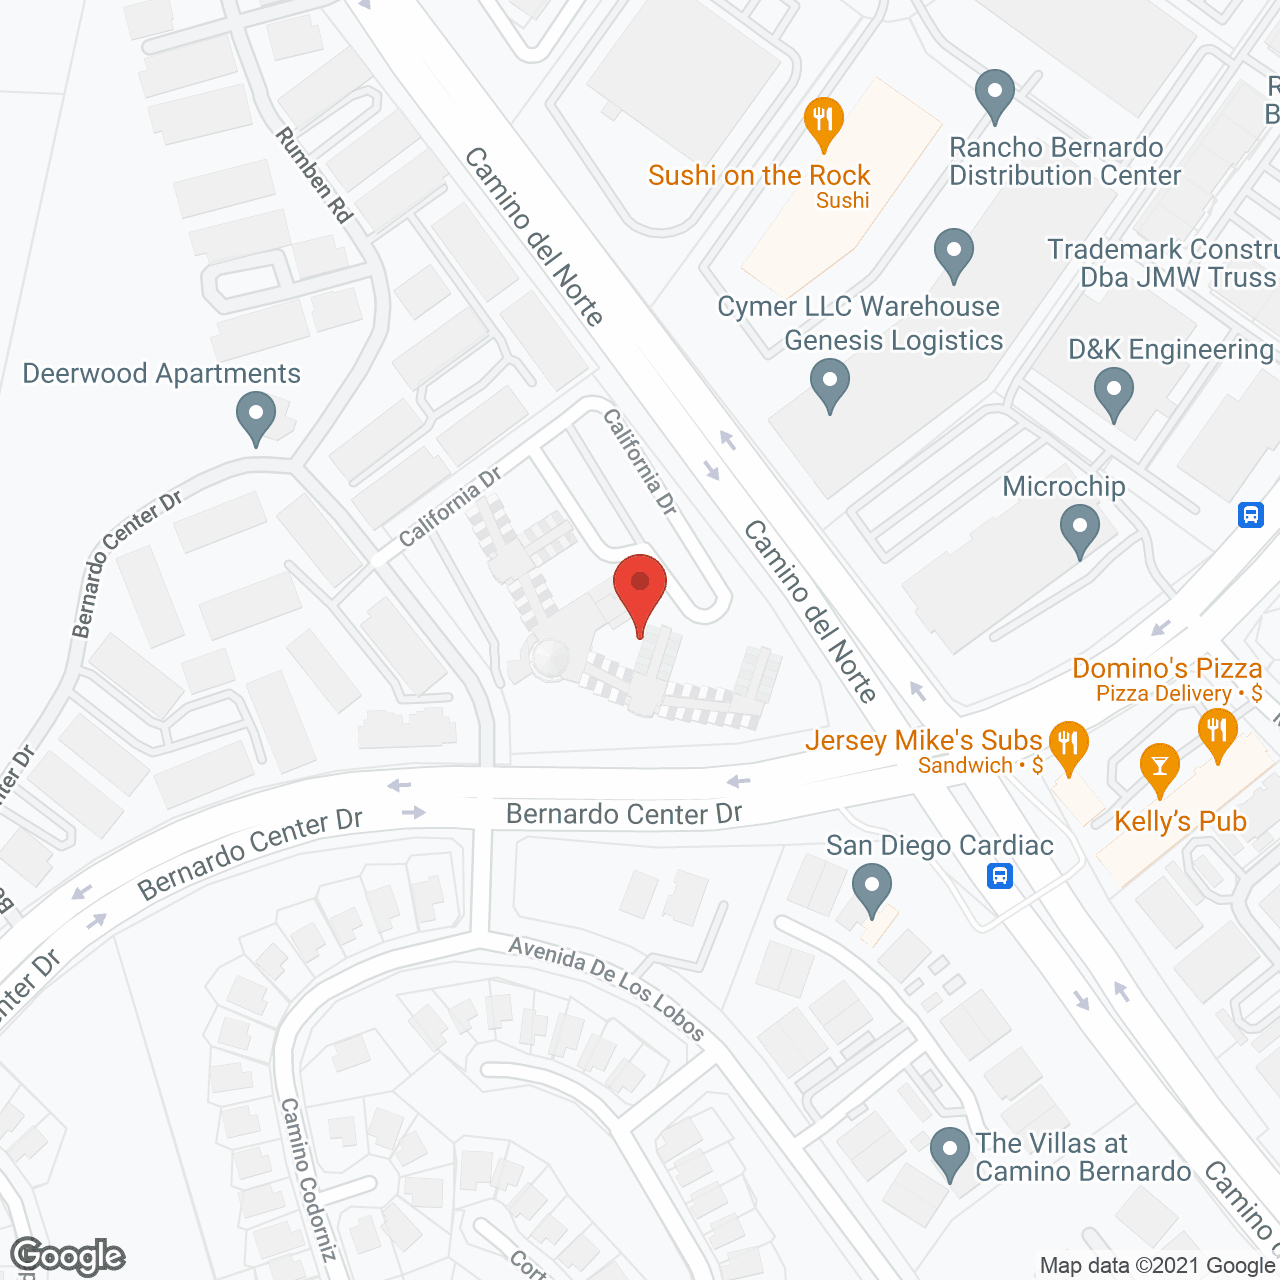 Villa Rancho Bernardo in google map